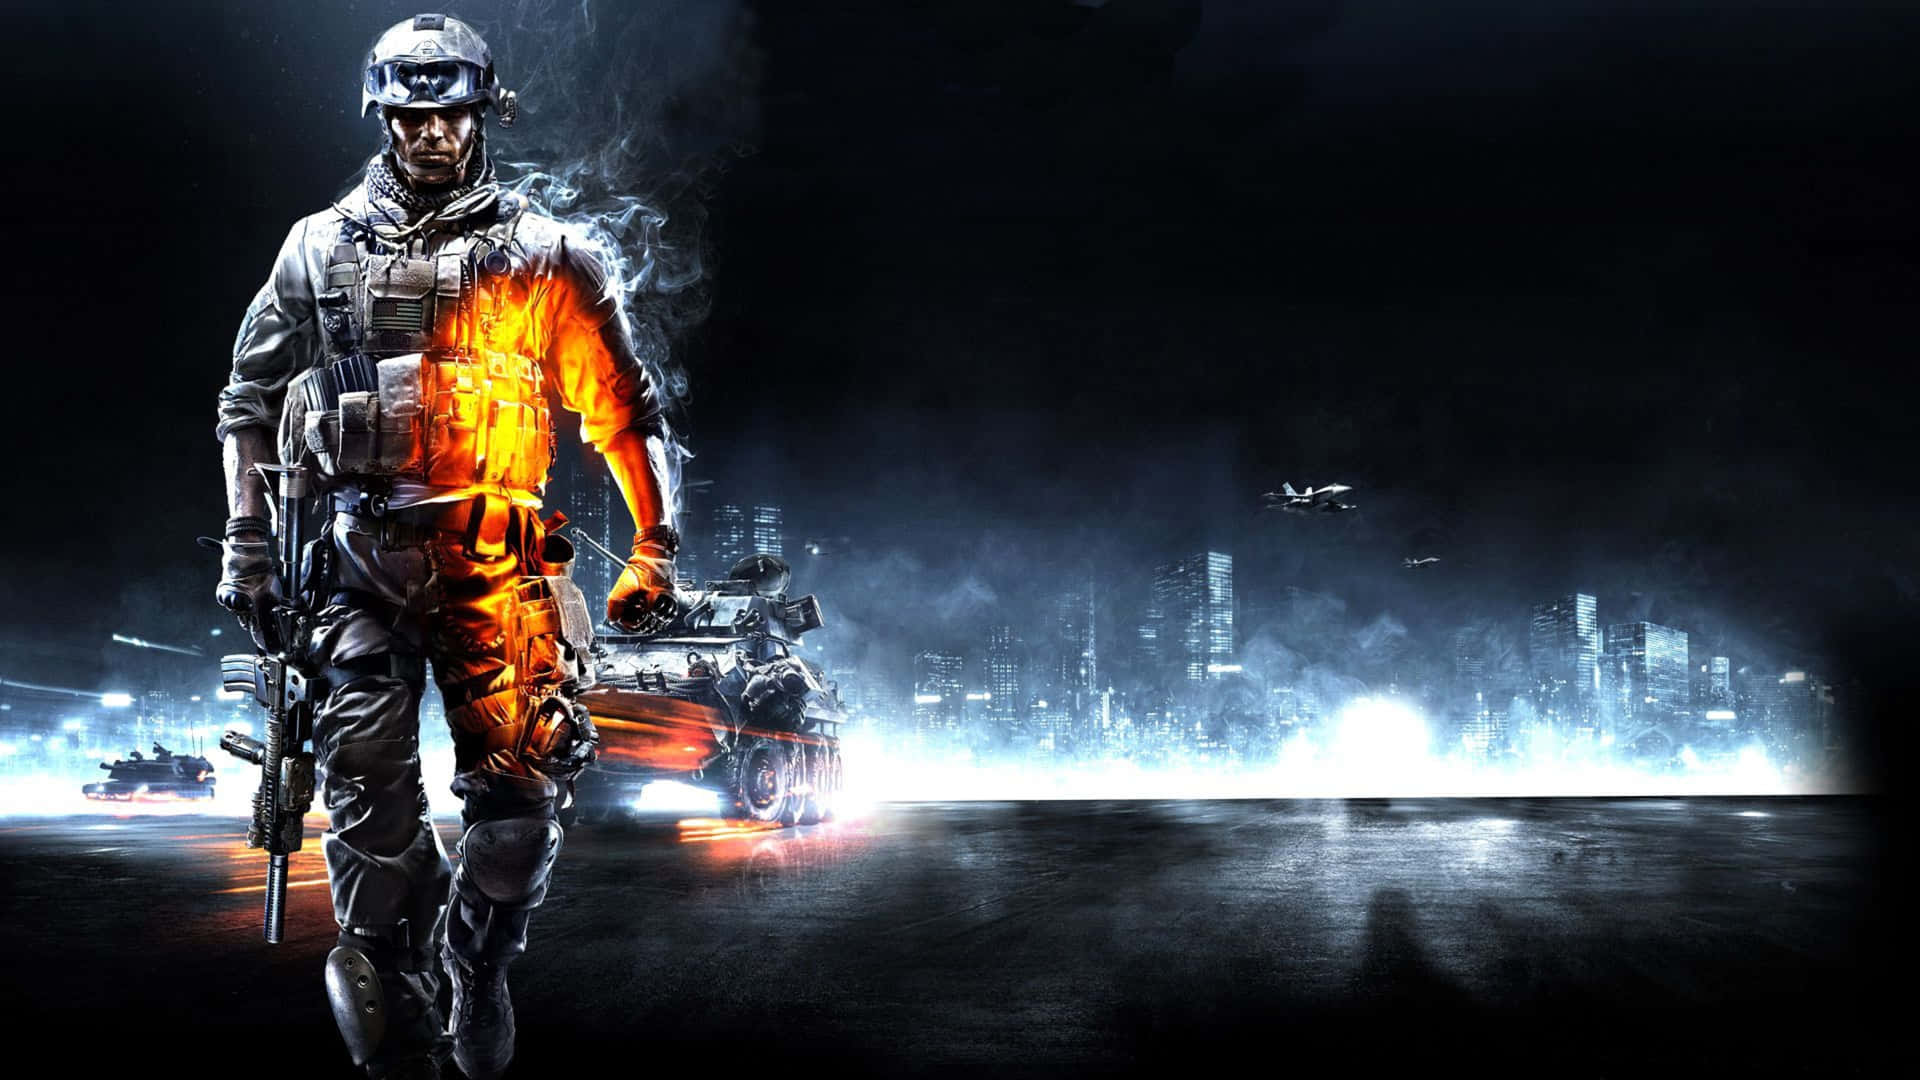 1440p Battlefield 1 Burning Soldier Background